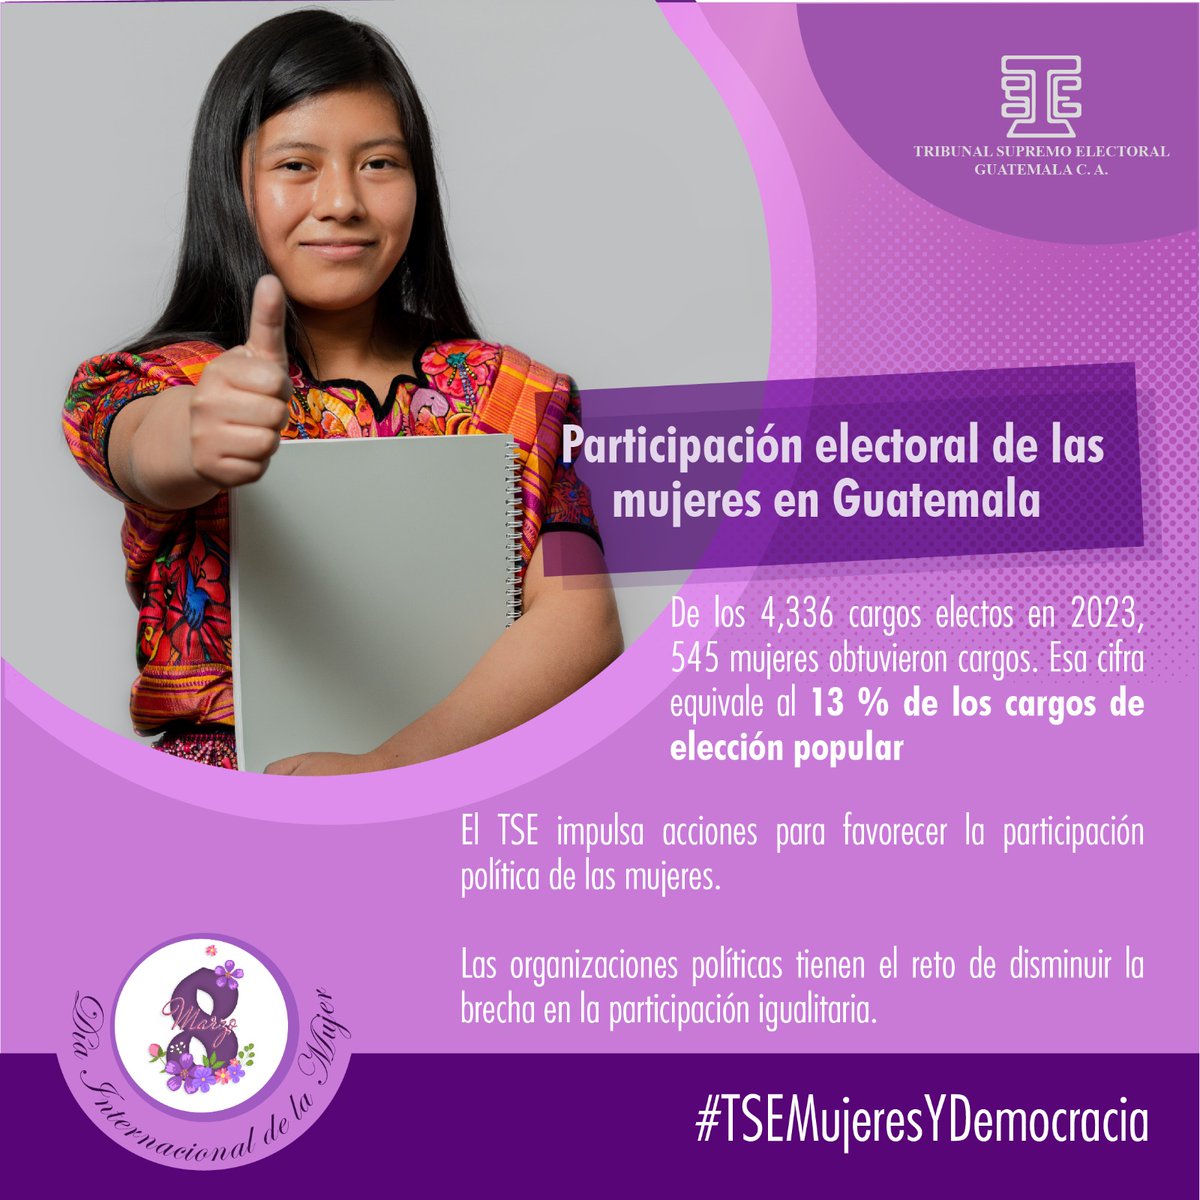 El Tribunal Supremo Electoral desde su Política de Igualdad de Género trabaja para fortalecer la democracia guatemalteca.

 #DíaDeLasMujeres #8M